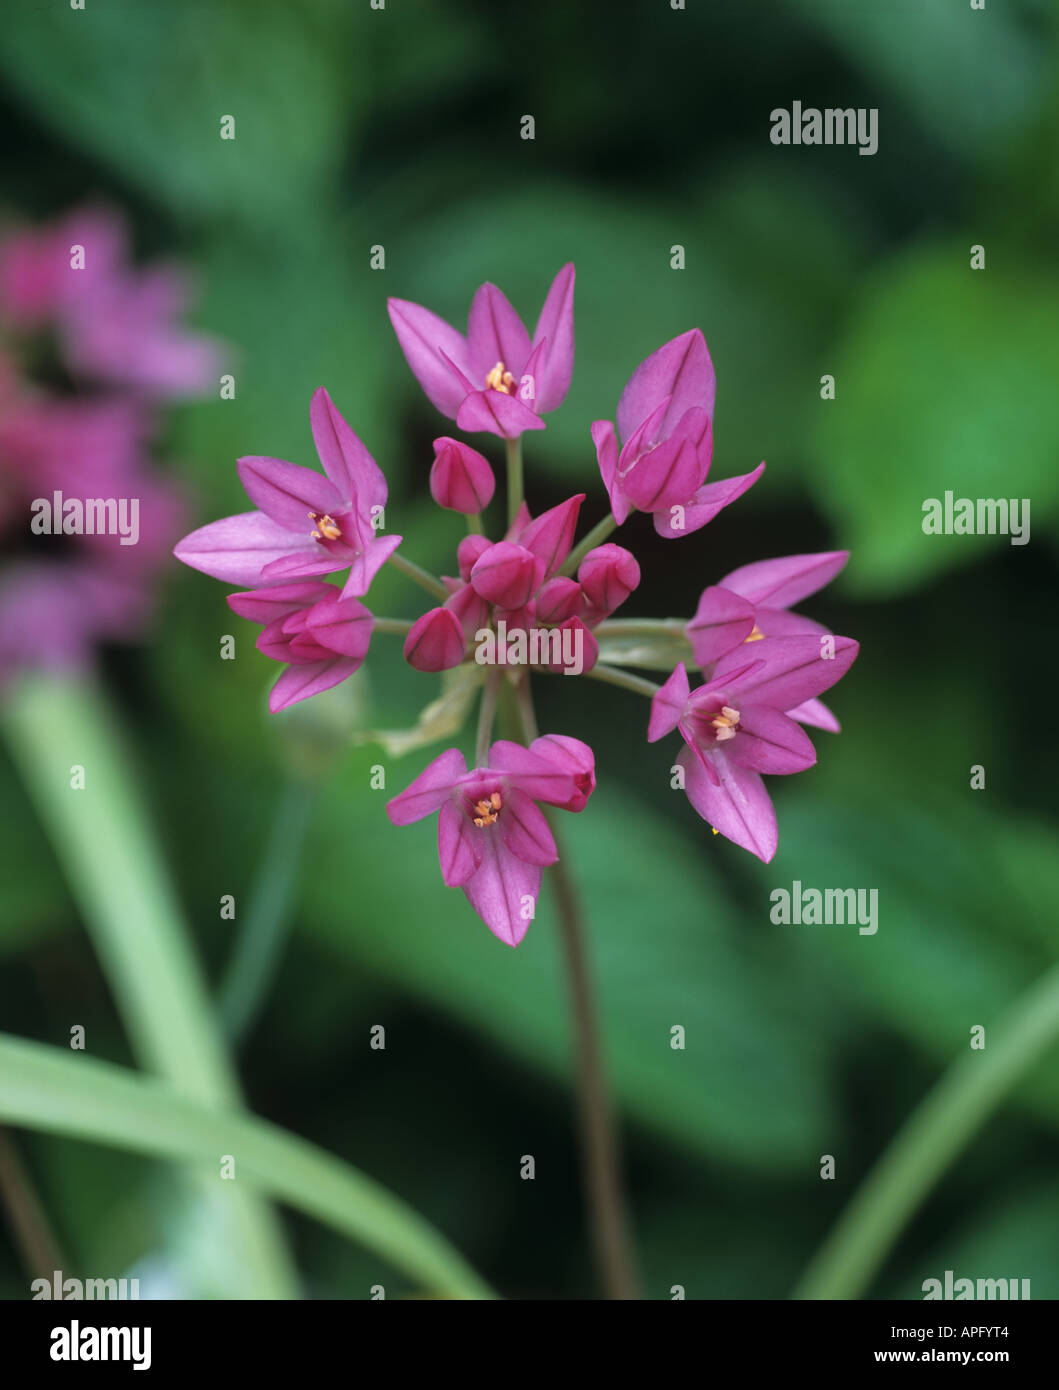 Flowerhead of Allium rosenbachianum Stock Photo